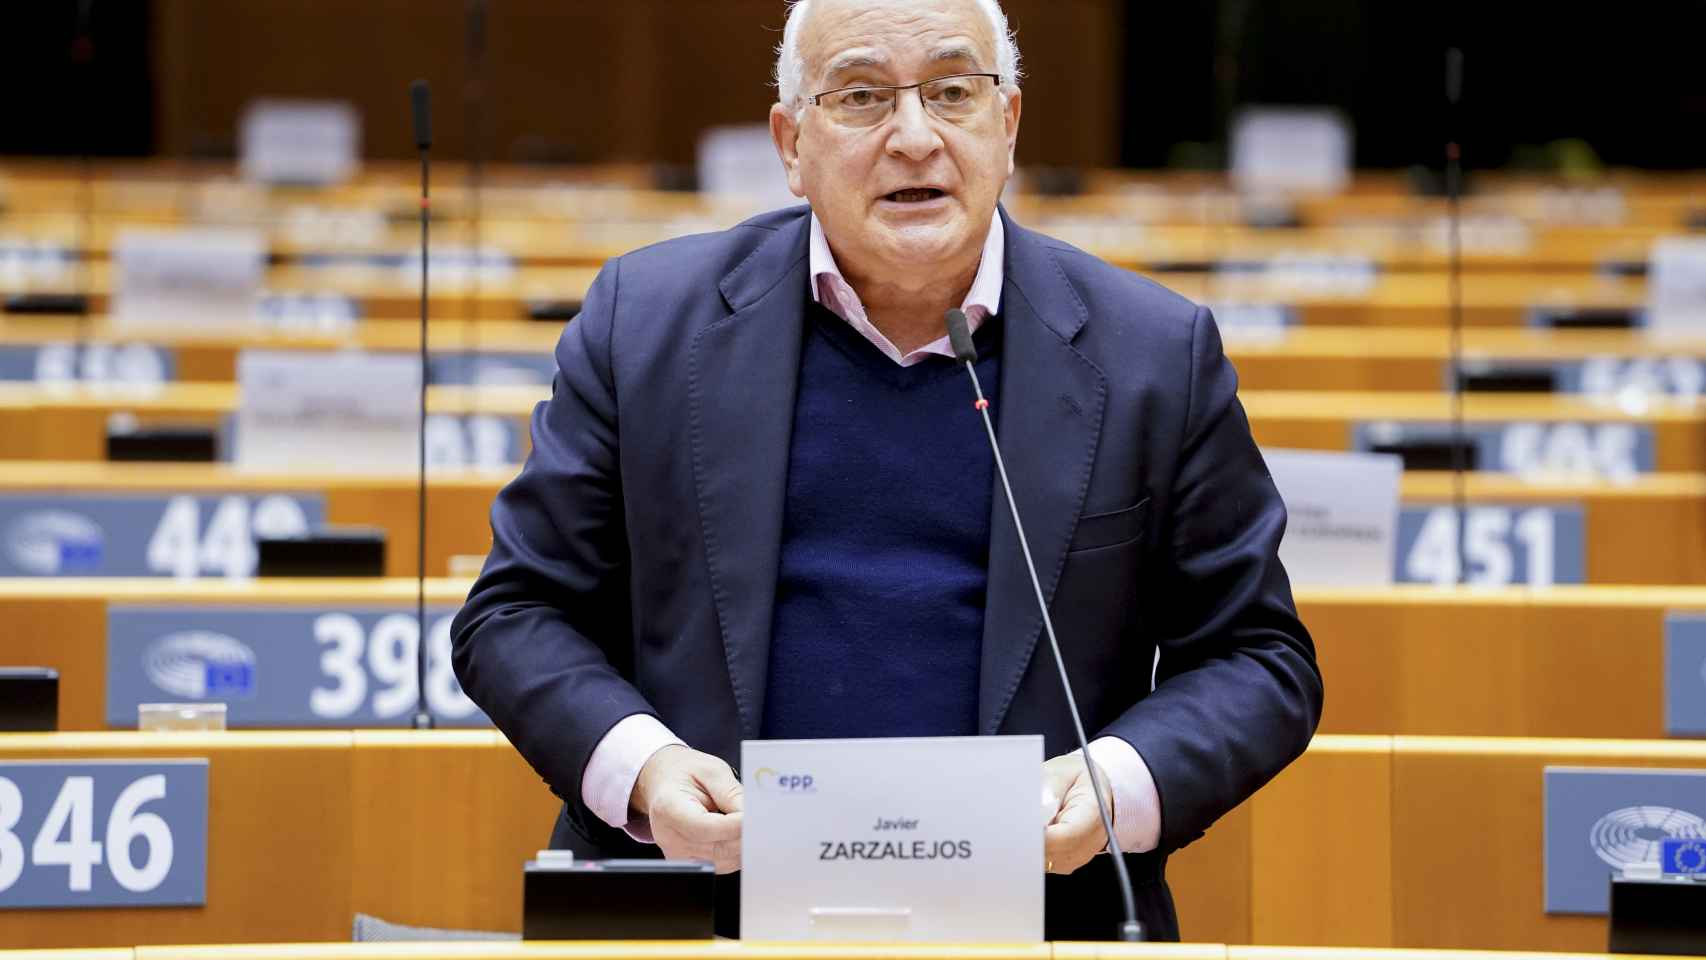 El eurodiputado del PP, Javier Zarzalejos, durante un debate en el Parlamento Europeo